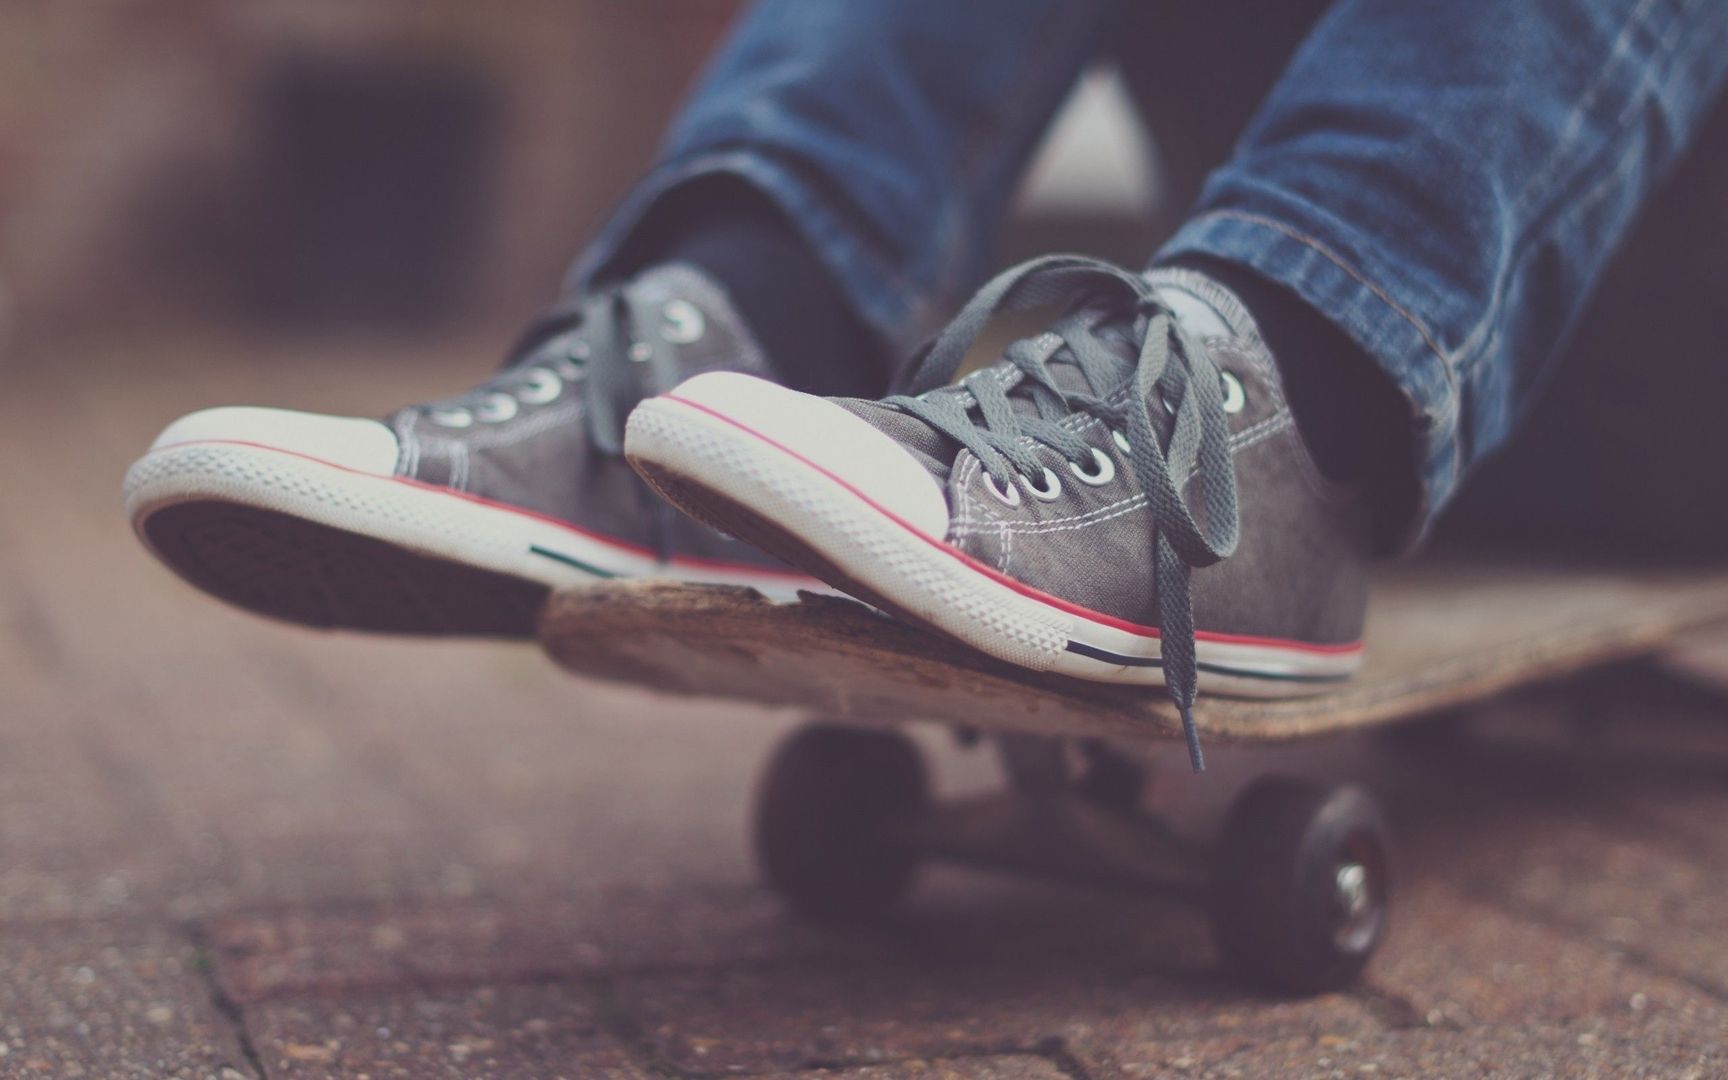 Sneakers on a skateboard wallpaper - Free Wide HD Wallpaper